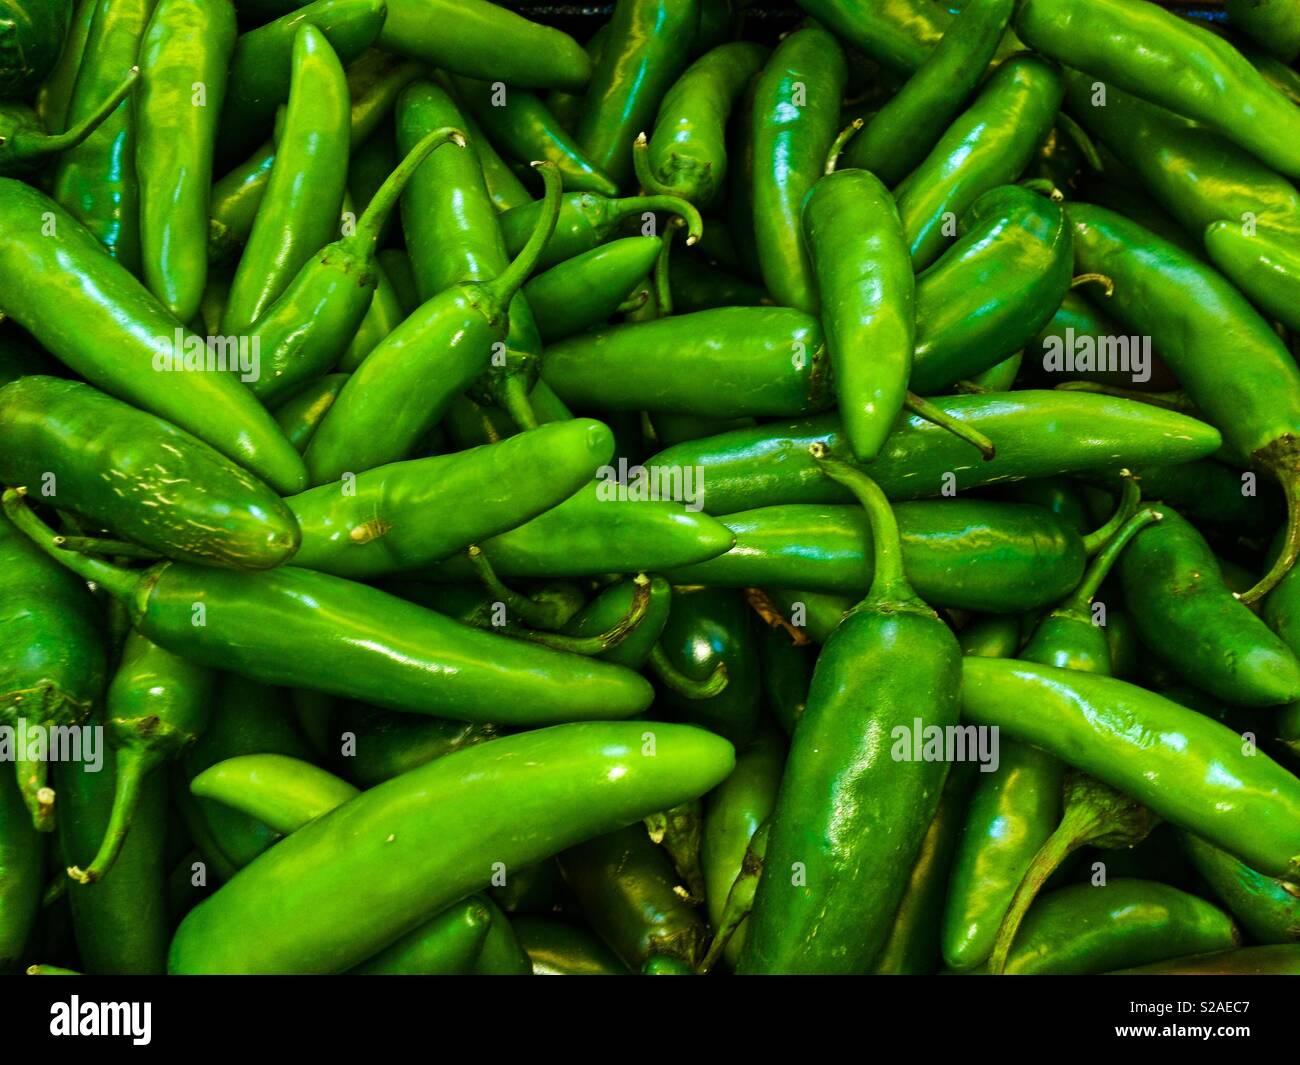 Jalapeño peppers in bulk. Stock Photo